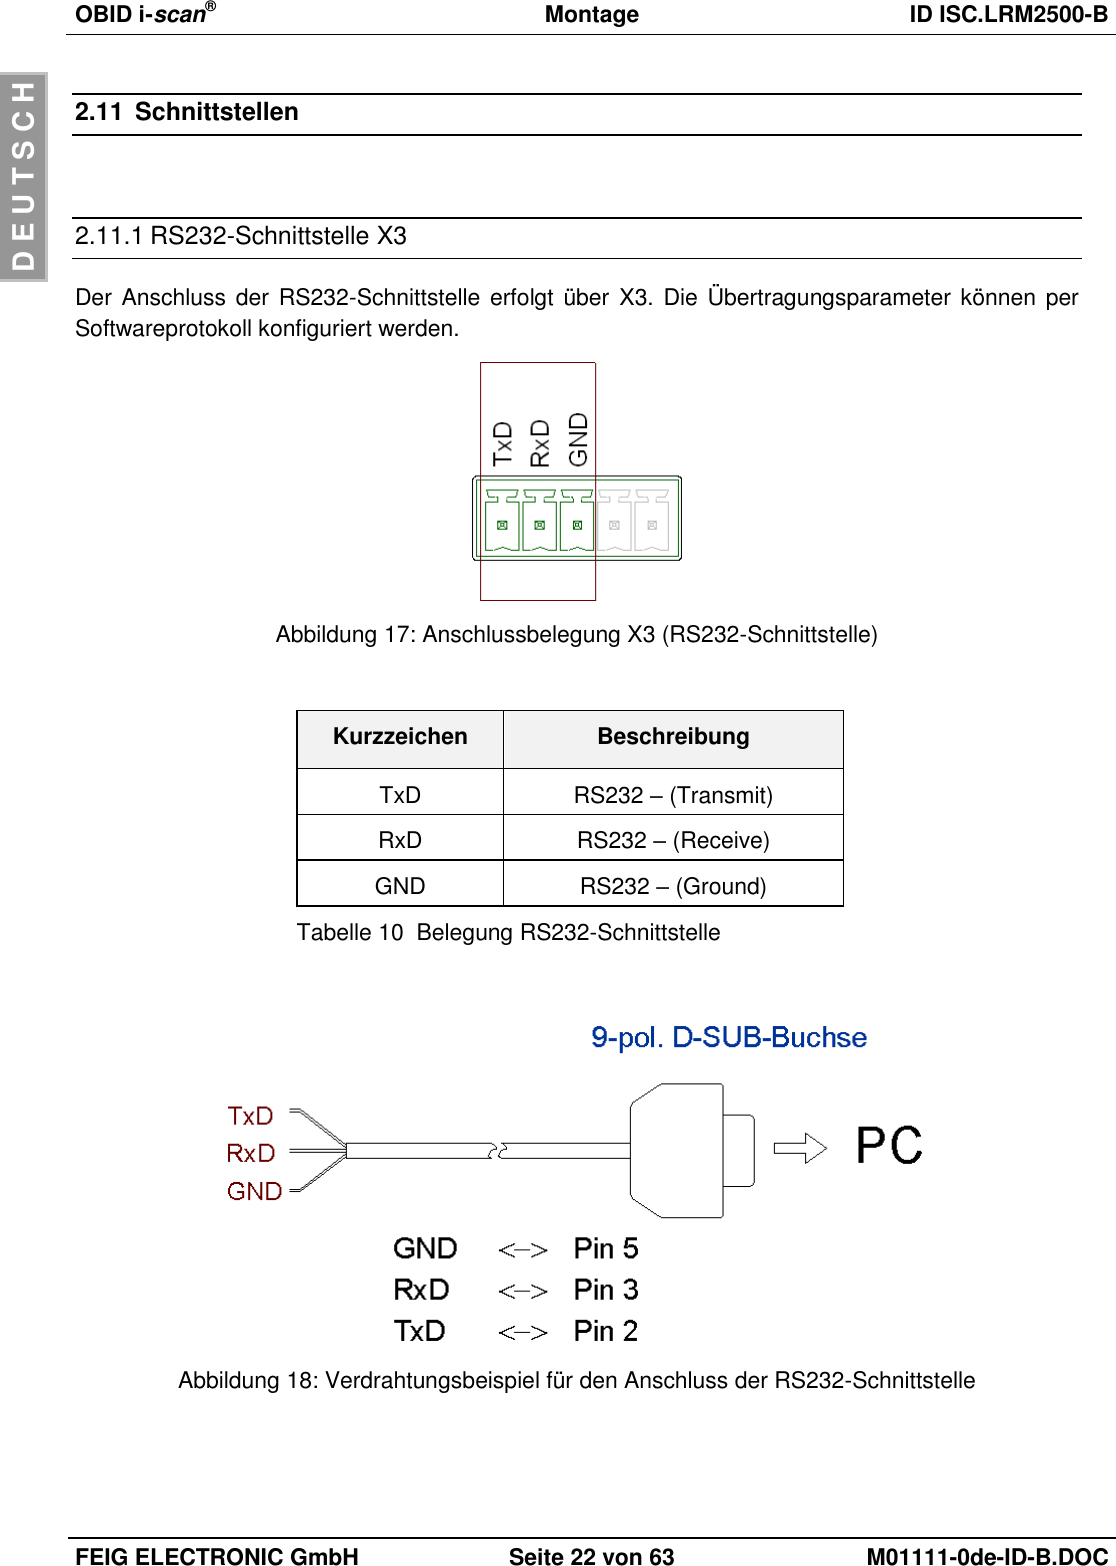 OBID i-scan®  Montage ID ISC.LRM2500-B  FEIG ELECTRONIC GmbH Seite 22 von 63 M01111-0de-ID-B.DOC  D E U T S C H 2.11  Schnittstellen  2.11.1 RS232-Schnittstelle X3 Der Anschluss der RS232-Schnittstelle erfolgt über  X3. Die Übertragungsparameter können per Softwareprotokoll konfiguriert werden.  Abbildung 17: Anschlussbelegung X3 (RS232-Schnittstelle)  Kurzzeichen Beschreibung TxD RS232 – (Transmit) RxD RS232 – (Receive) GND RS232 – (Ground) Tabelle 10  Belegung RS232-Schnittstelle   Abbildung 18: Verdrahtungsbeispiel für den Anschluss der RS232-Schnittstelle  